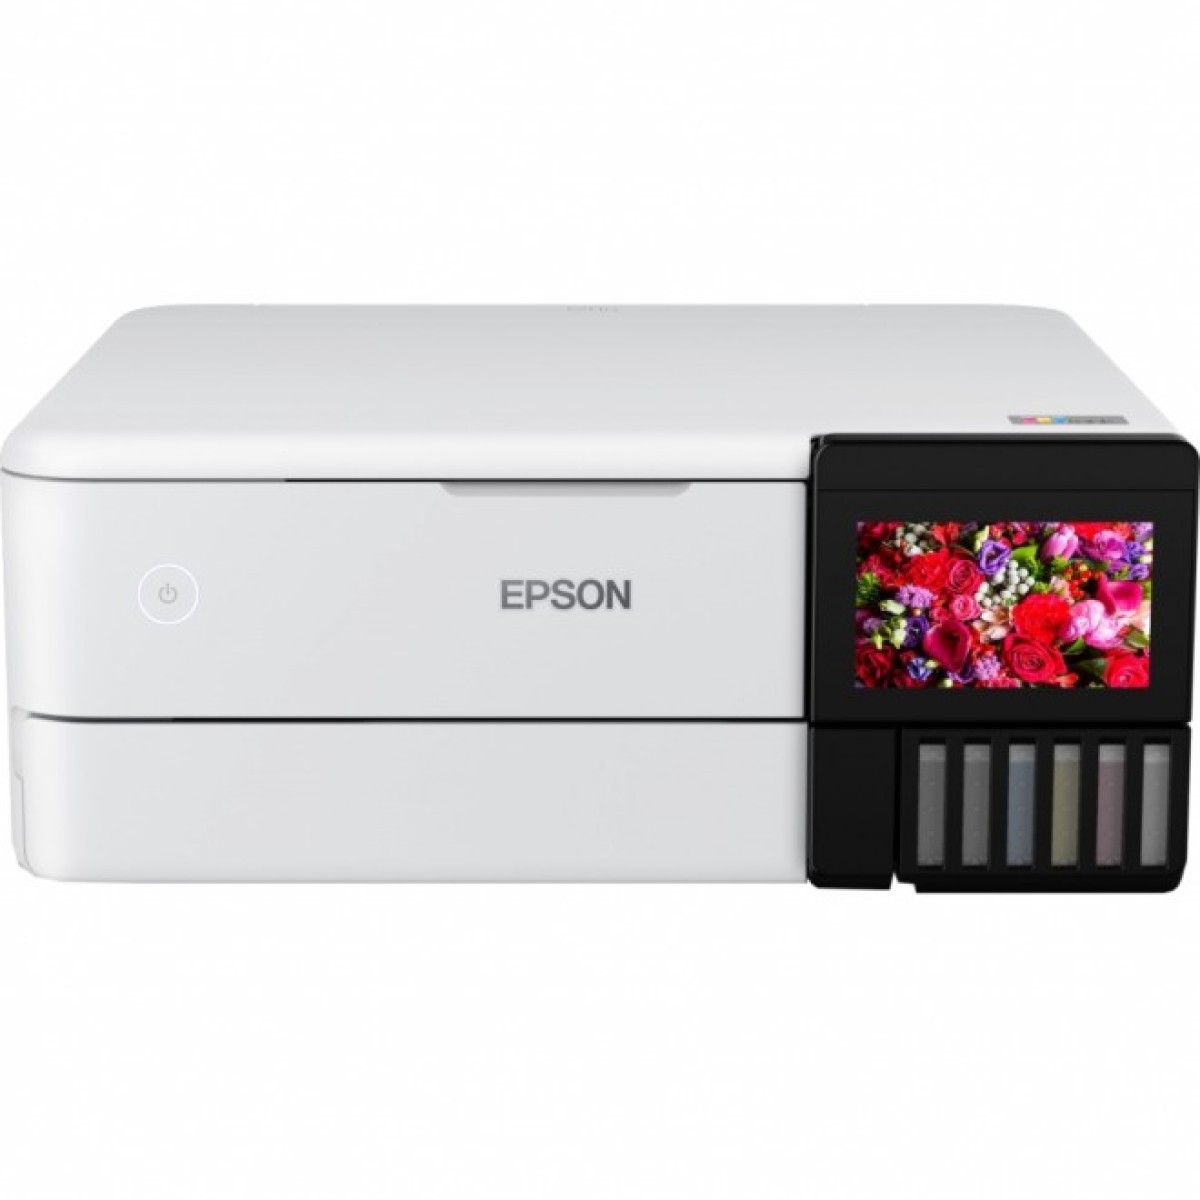 Многофункциональное устройство Epson L8160 Фабрика печати c WI-FI (C11CJ20404) 256_256.jpg